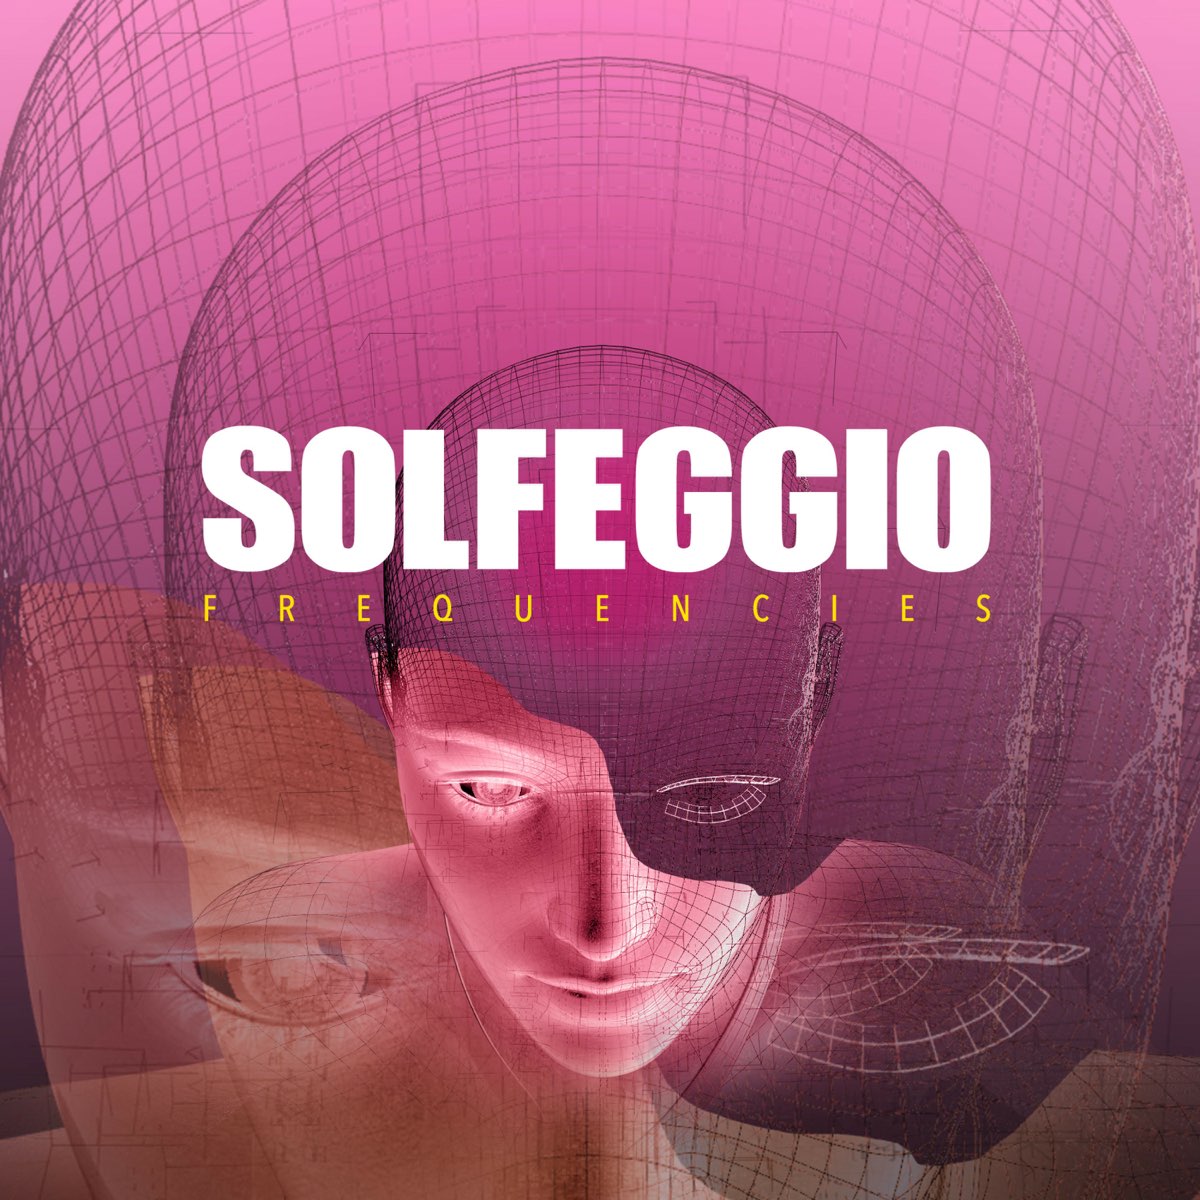 Rife Machine Digital - Album by Solfeggio Frequencies - Apple Music